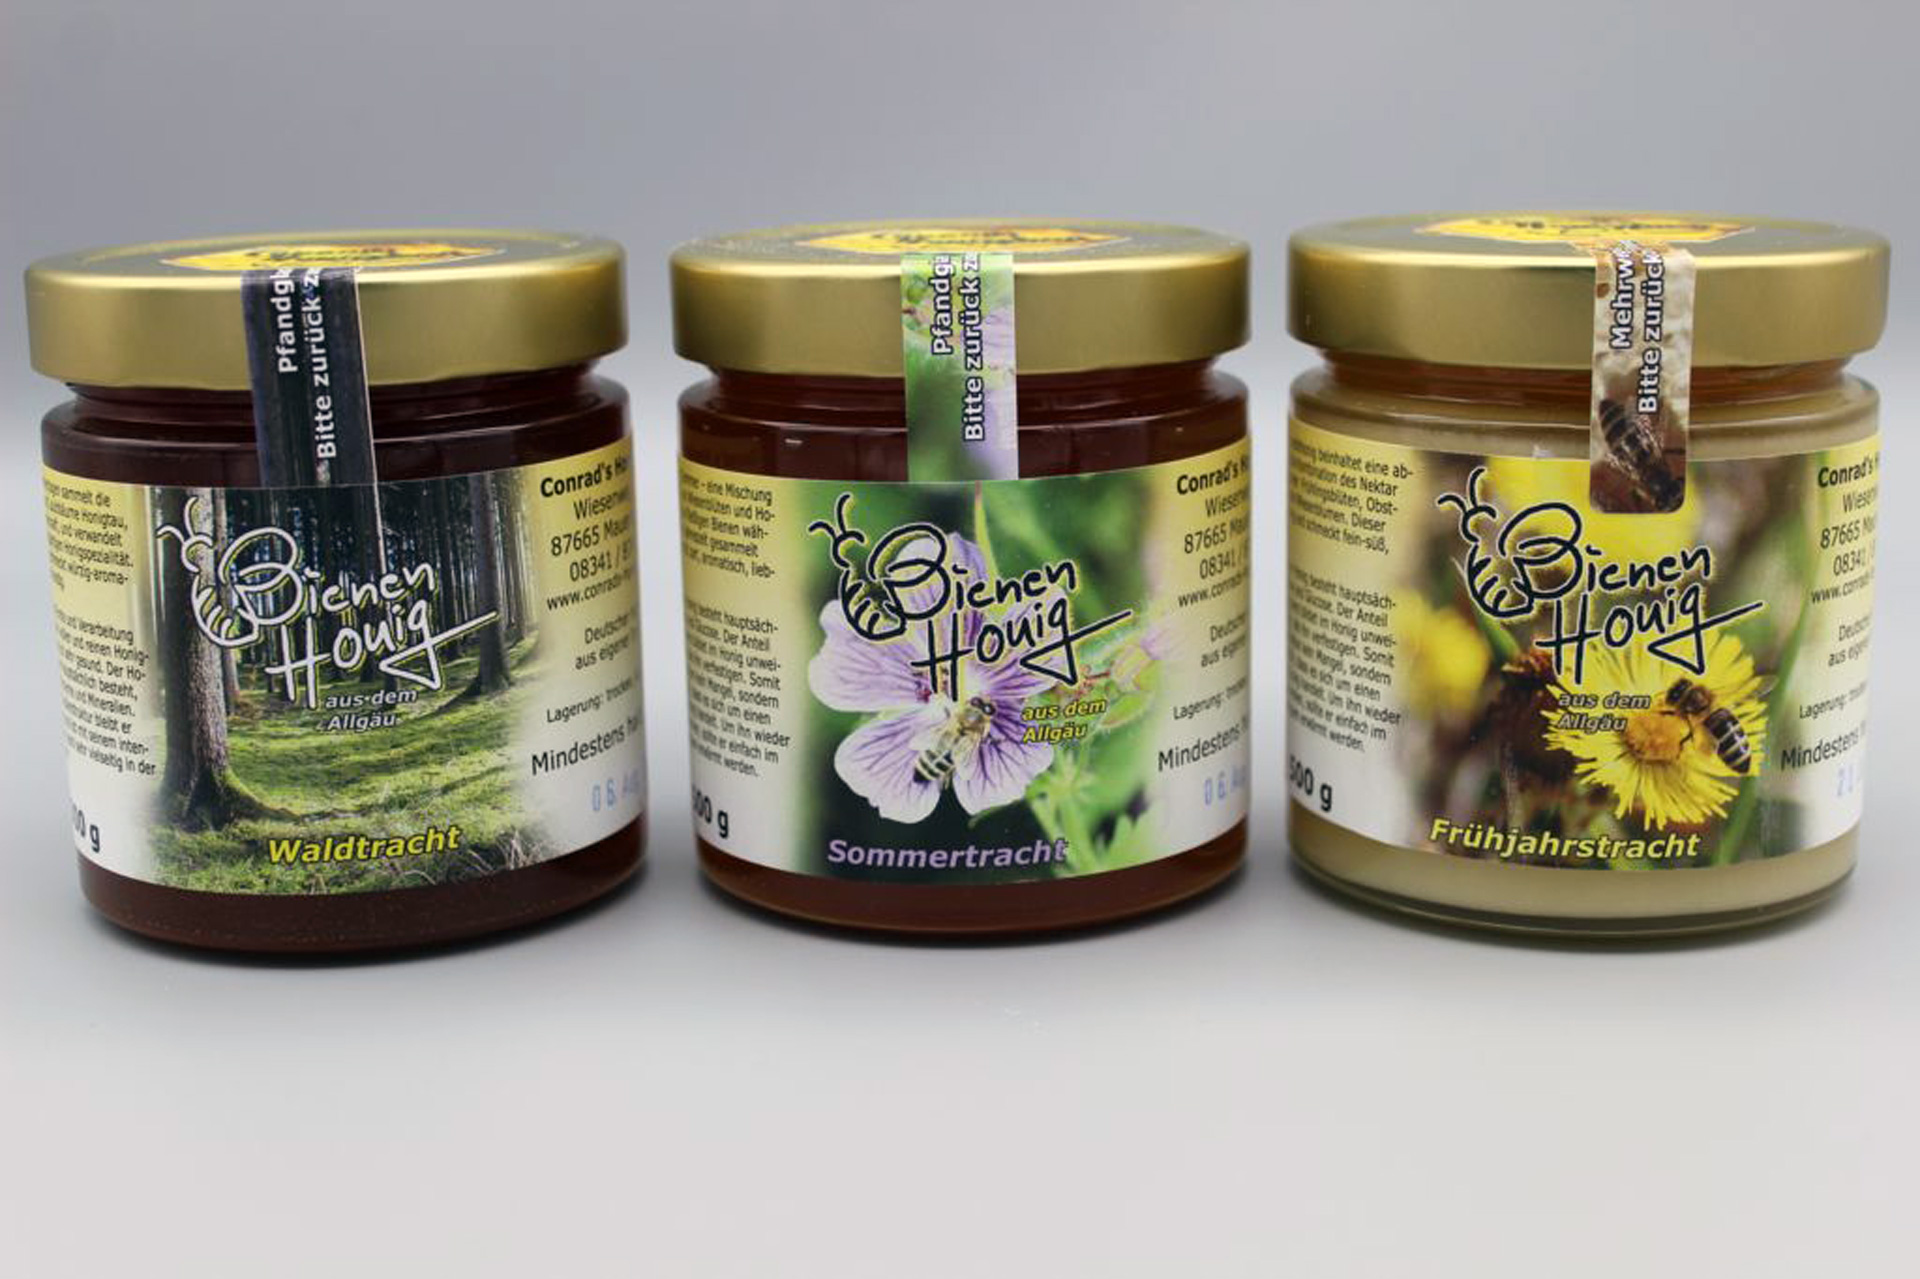 Imkerei Conrad´s Honigland, Waldtracht-Honigglas 500g. An sonnigen Sommertagen sammelt die Biene auf Nadel-und Laubbäume Honigtau, einen süßen Pflanzensaft, und verwandelt ihn zu dieser einzigartigen Honigspezialität. Unser Waldhonig schmeckt würzig-aromatisch, kräftig, vollmundig. Die schonende Ernte und Verarbeitung gewährleistet einen vollen und reinen Honiggenuss. Waldhonig ist sehr gesund. Der Honigtau, aus dem er hauptsächlich besteht, enthält wertvolle Enzyme und Mineralien.